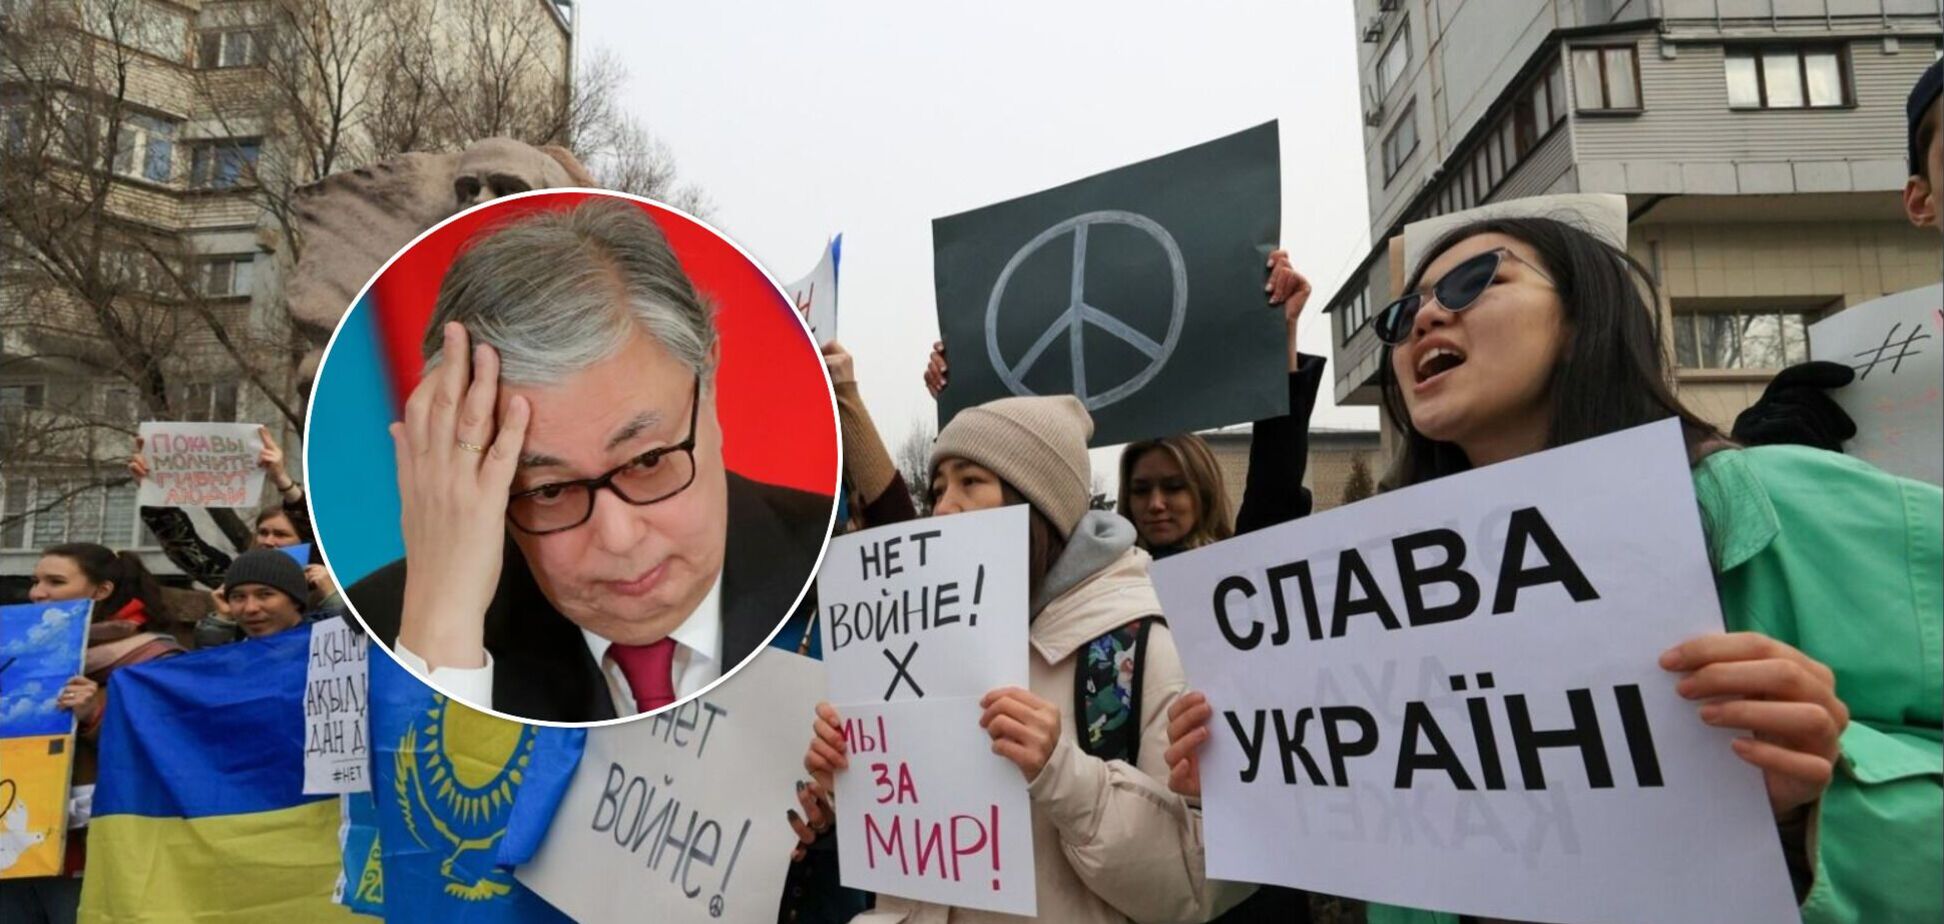 Казахи и россияне в Казахстане по-разному оценивают события в Украине – опрос